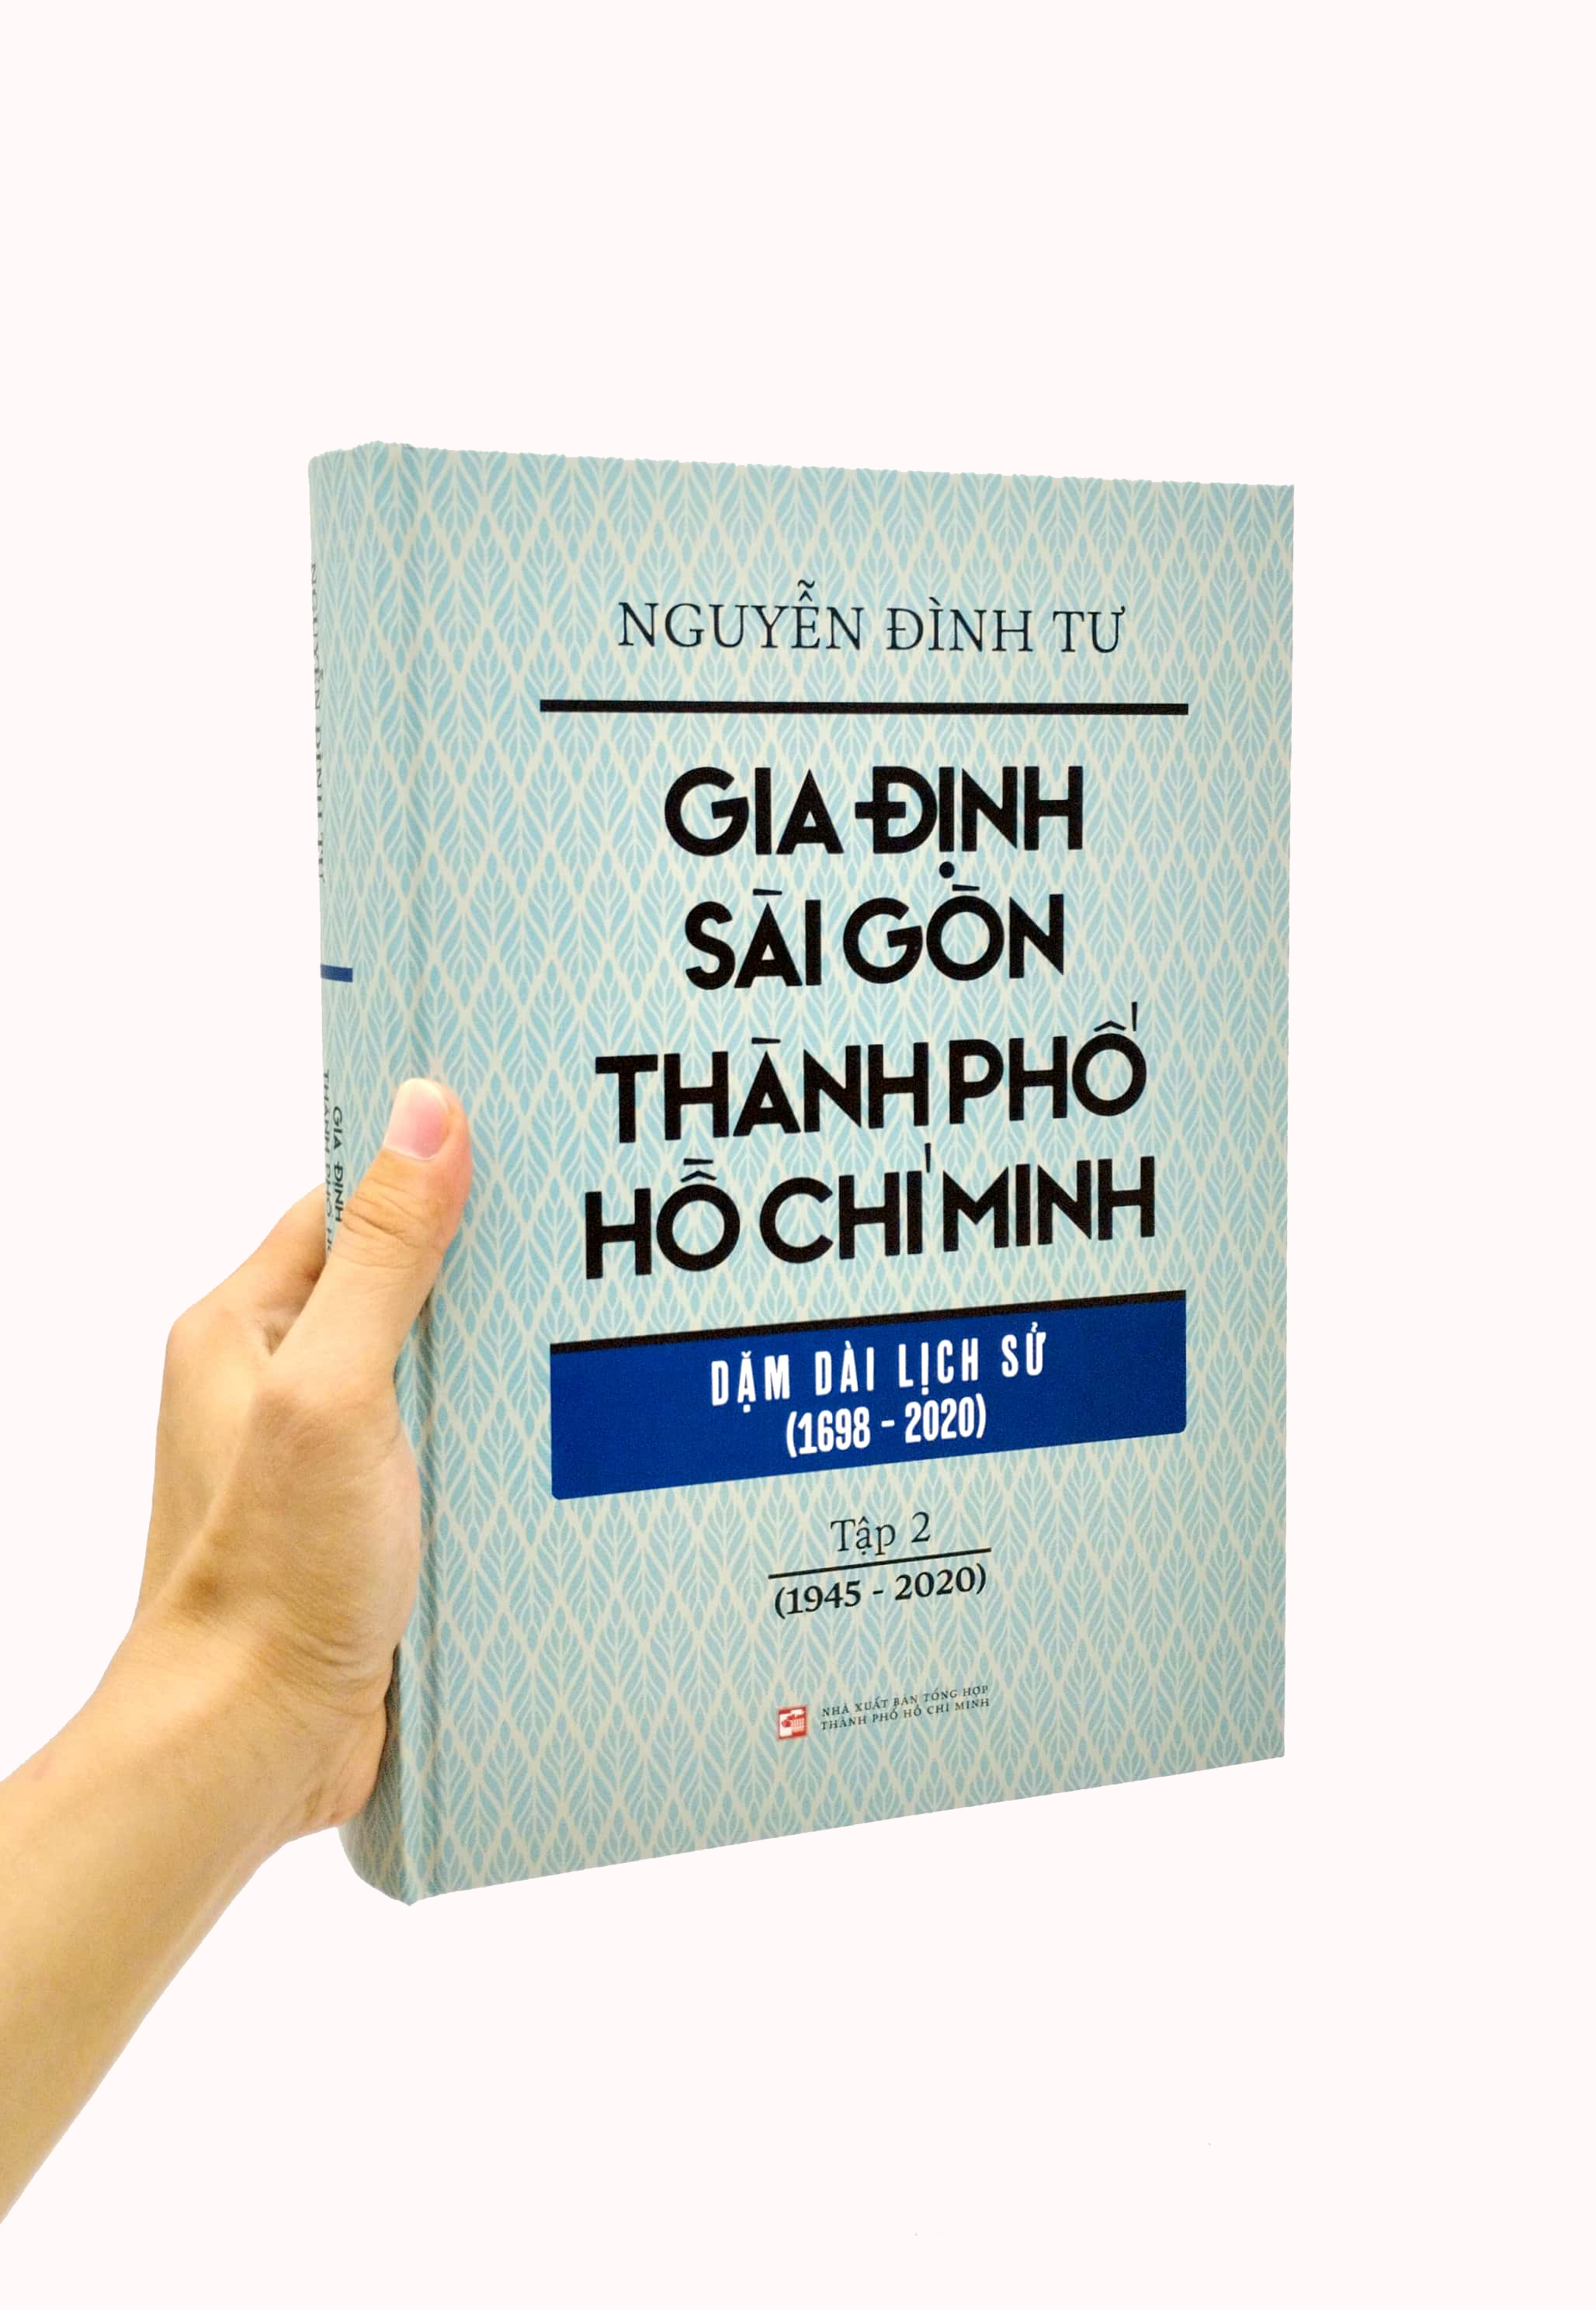 Gia Định - Sài Gòn - Thành Phố Hồ Chí Minh: Dặm Dài Lịch Sử 1698-2020 - Tập 2: 1945-2020 - Bìa Cứng PDF